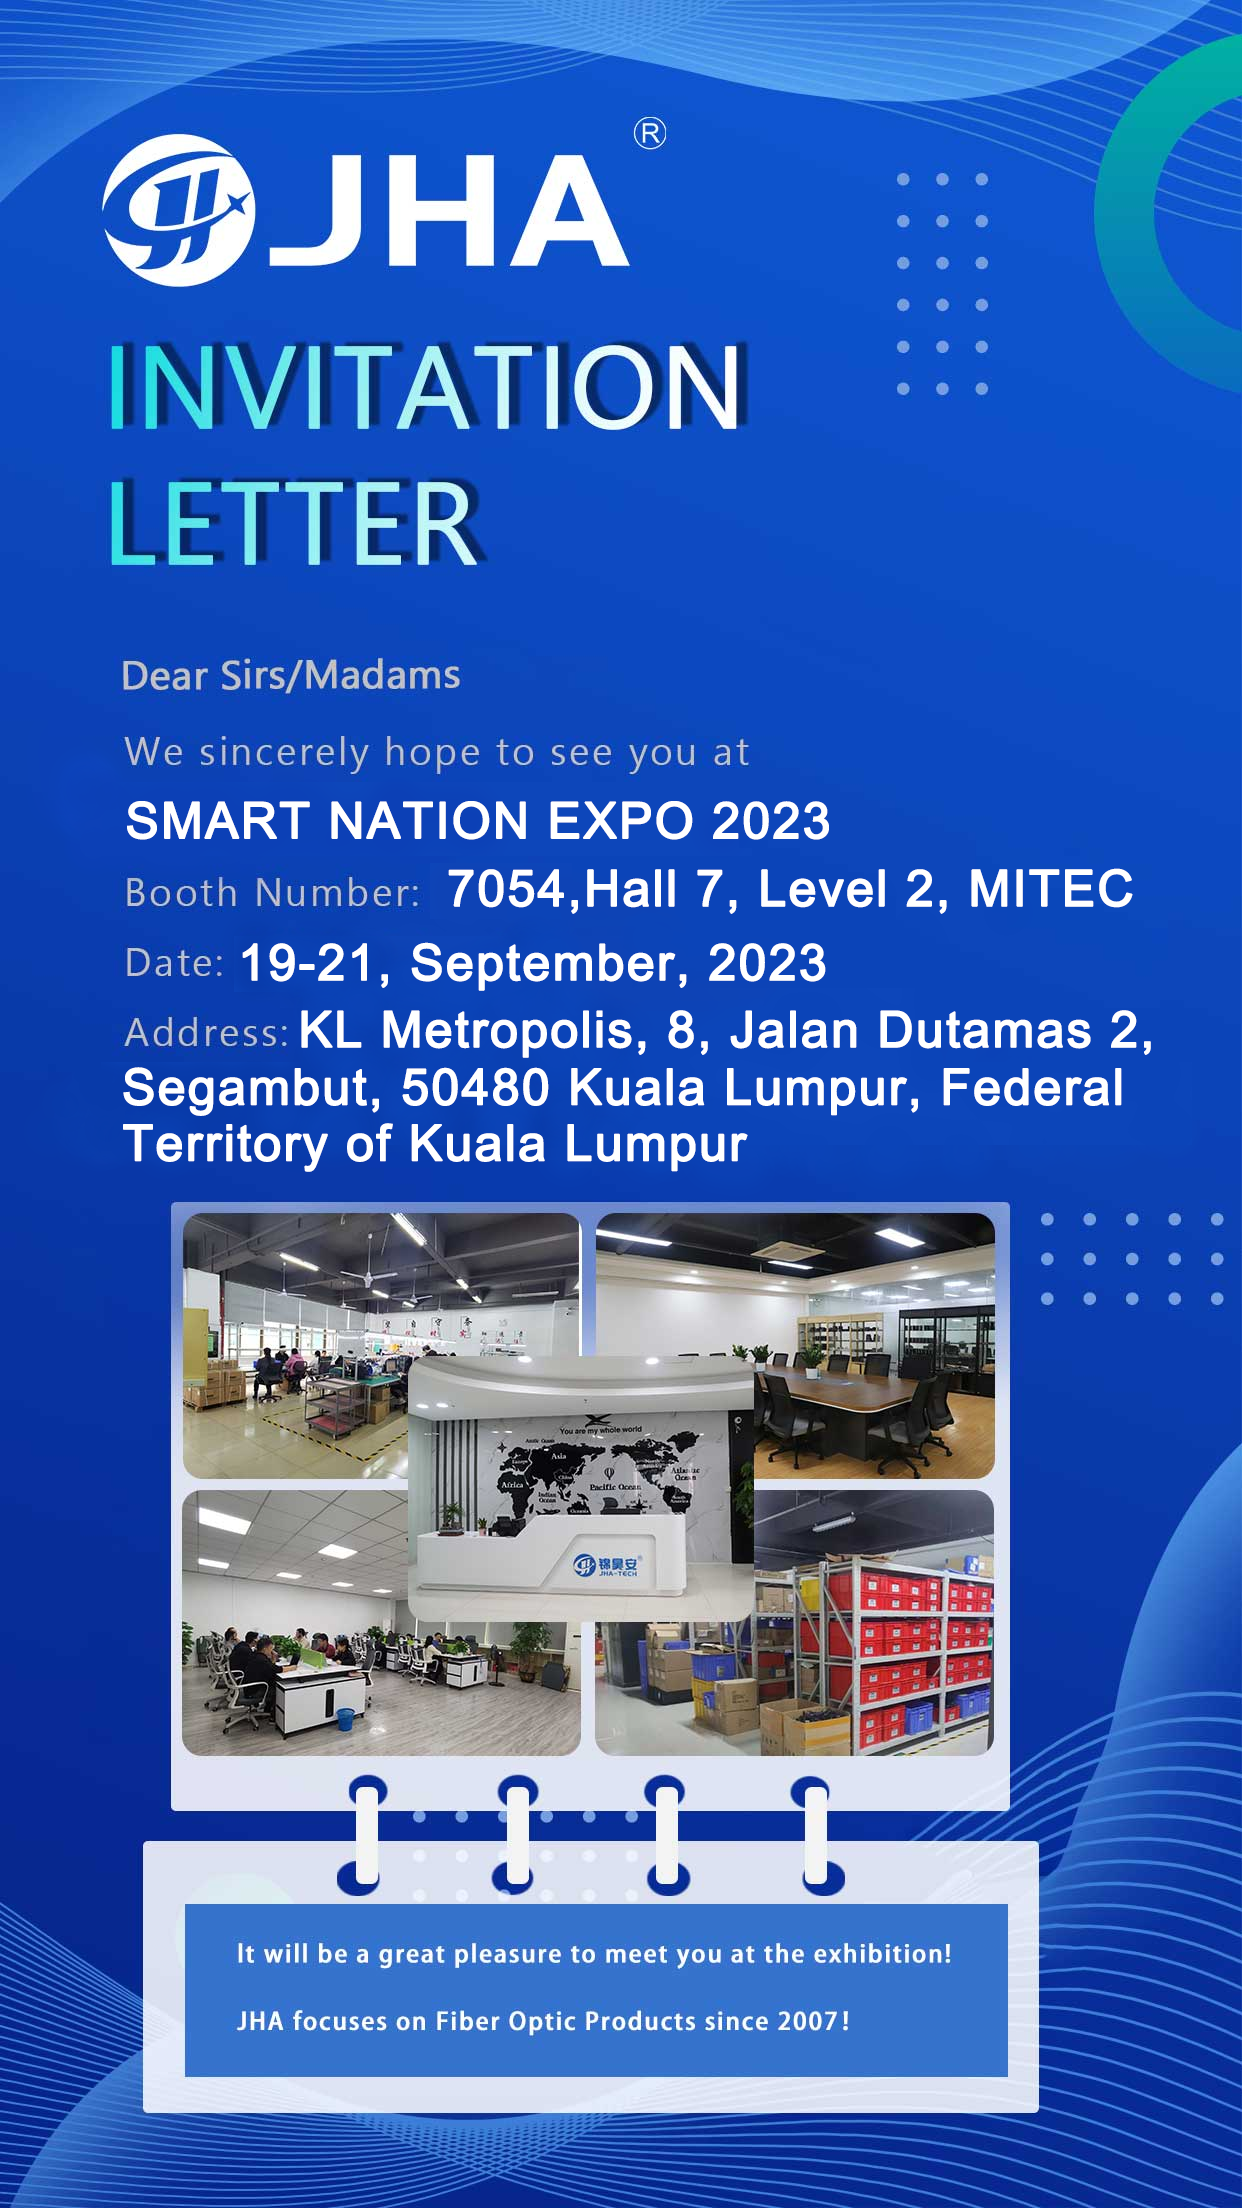 Nos vemos na SMART NATION EXPO 2023